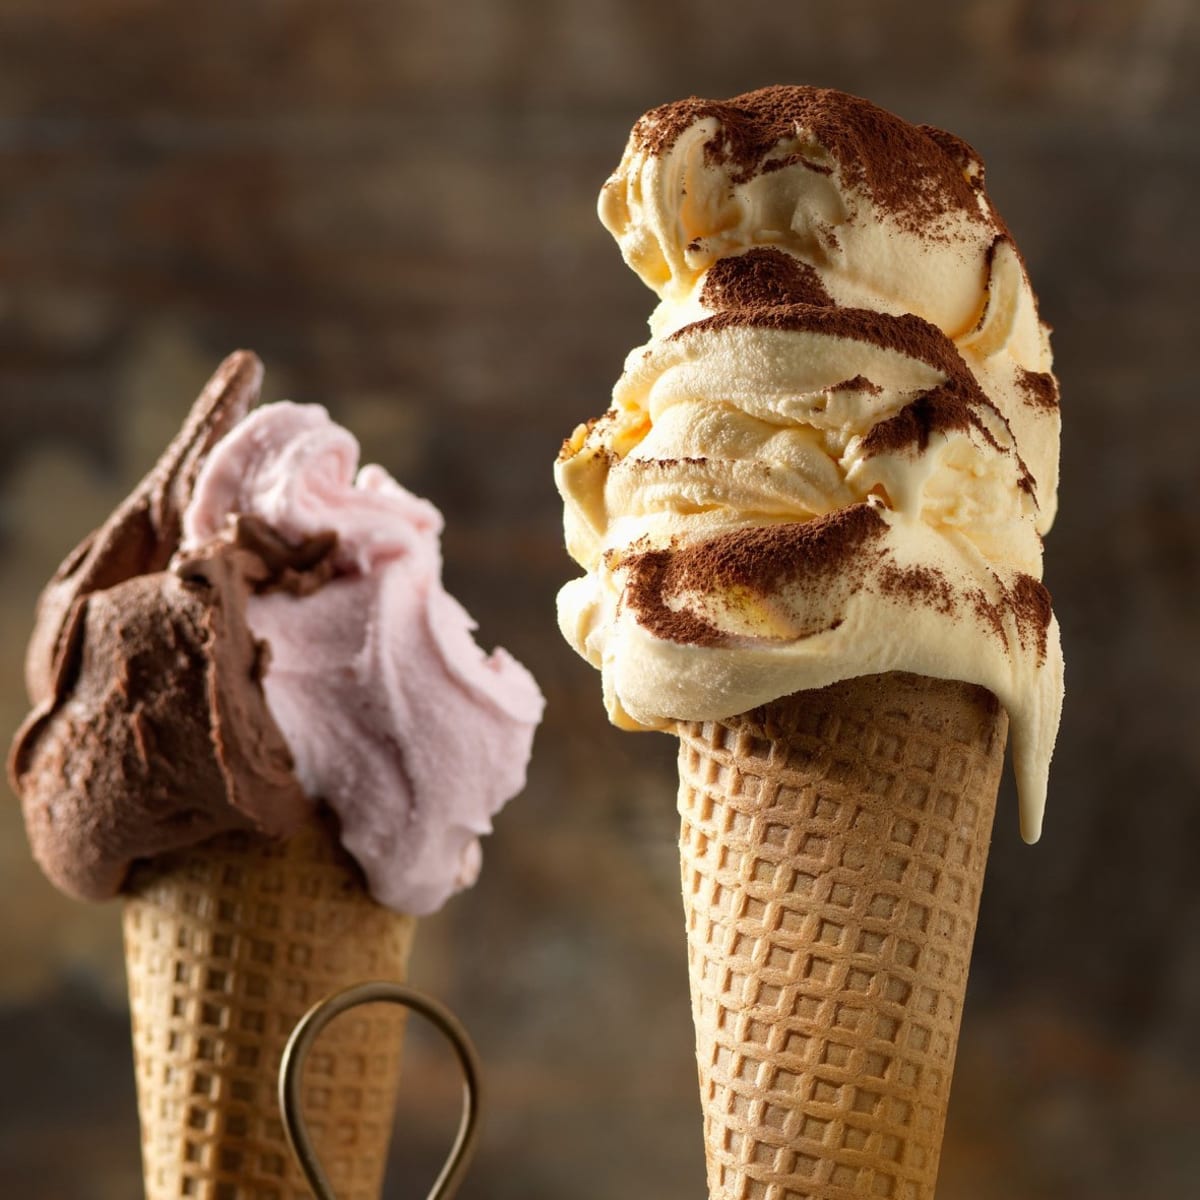 Už jste slyšeli o zmrzlině z podniku Cafe La Torta?